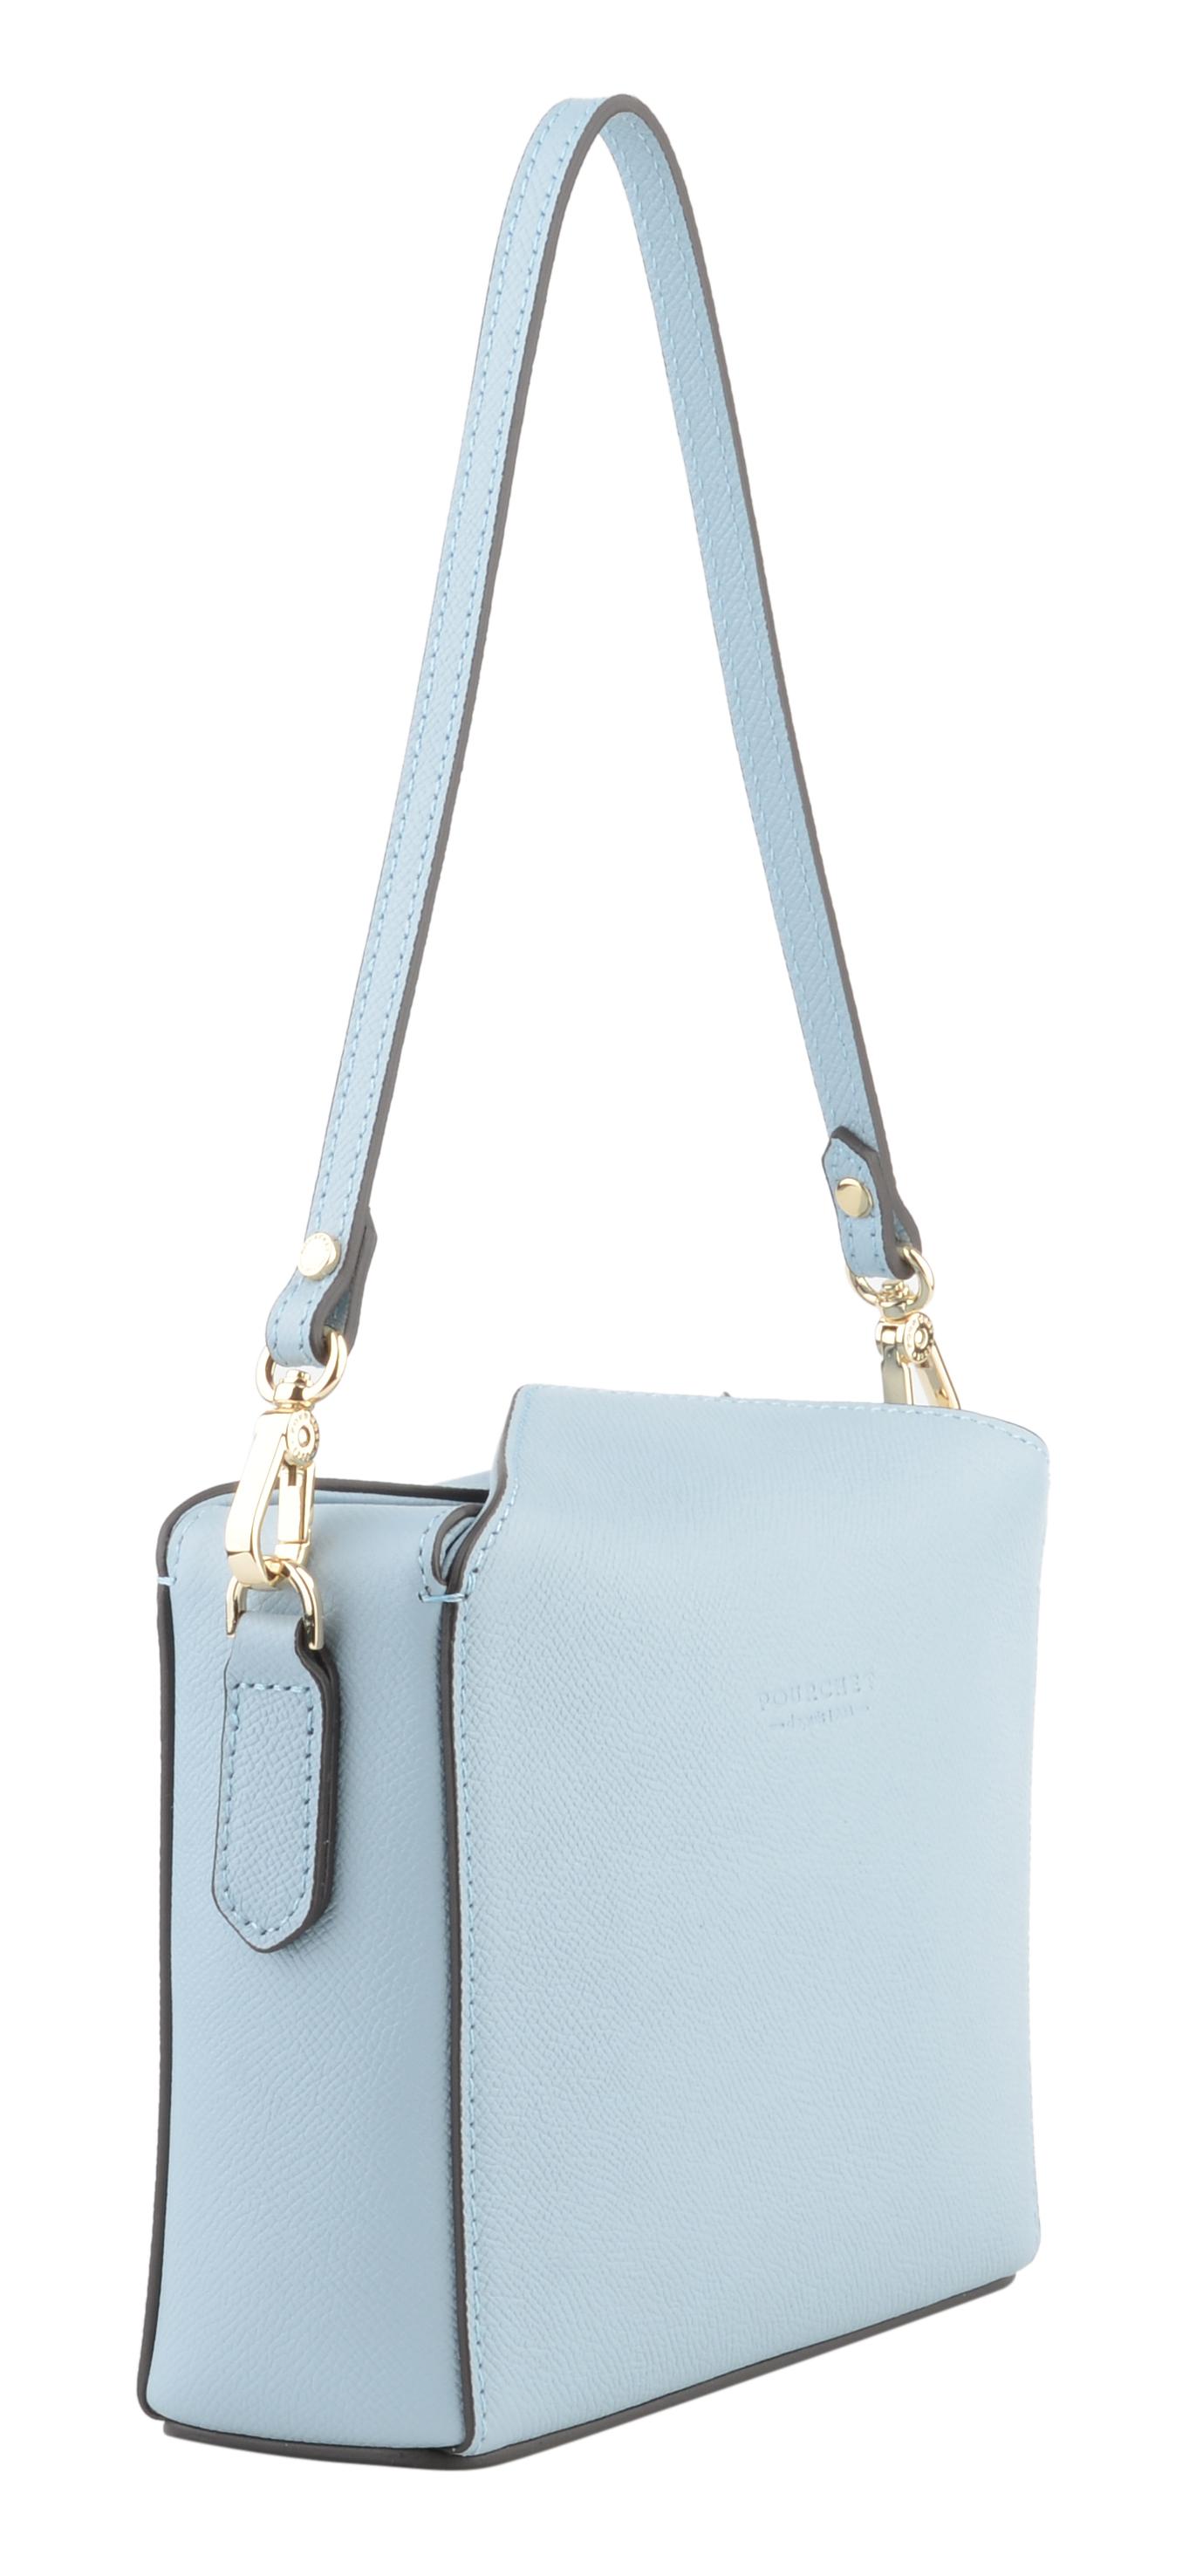 Женская сумка Maison Pourchet, голубая, цвет голубой, размер ONE SIZE - фото 2